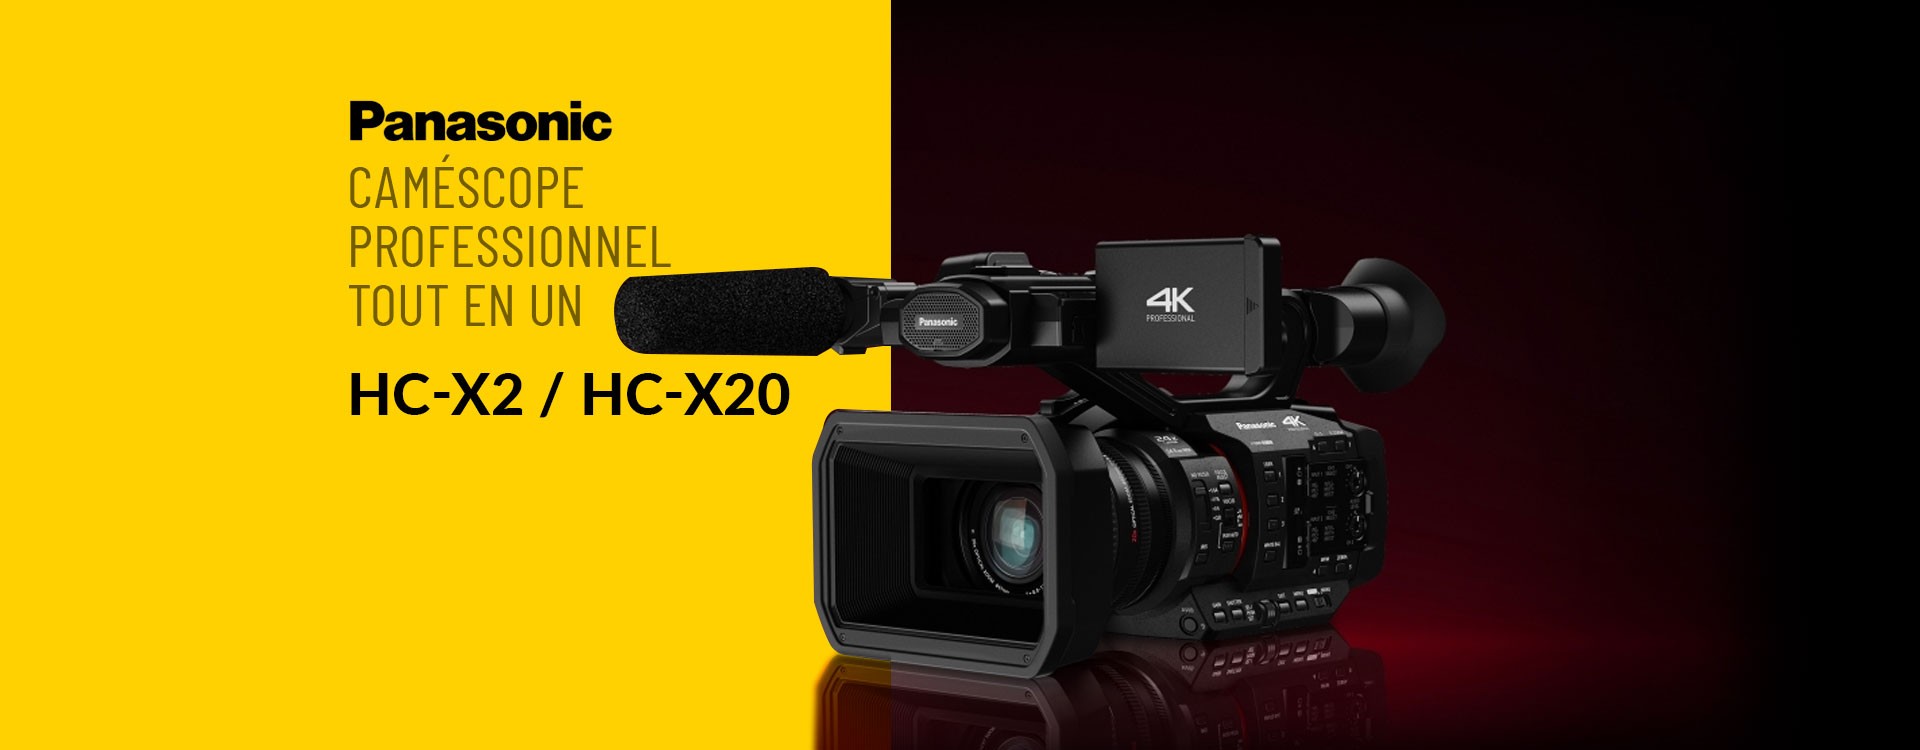 Panasonic HC-X2 / HC-X20 caméscope professionnel tout en un